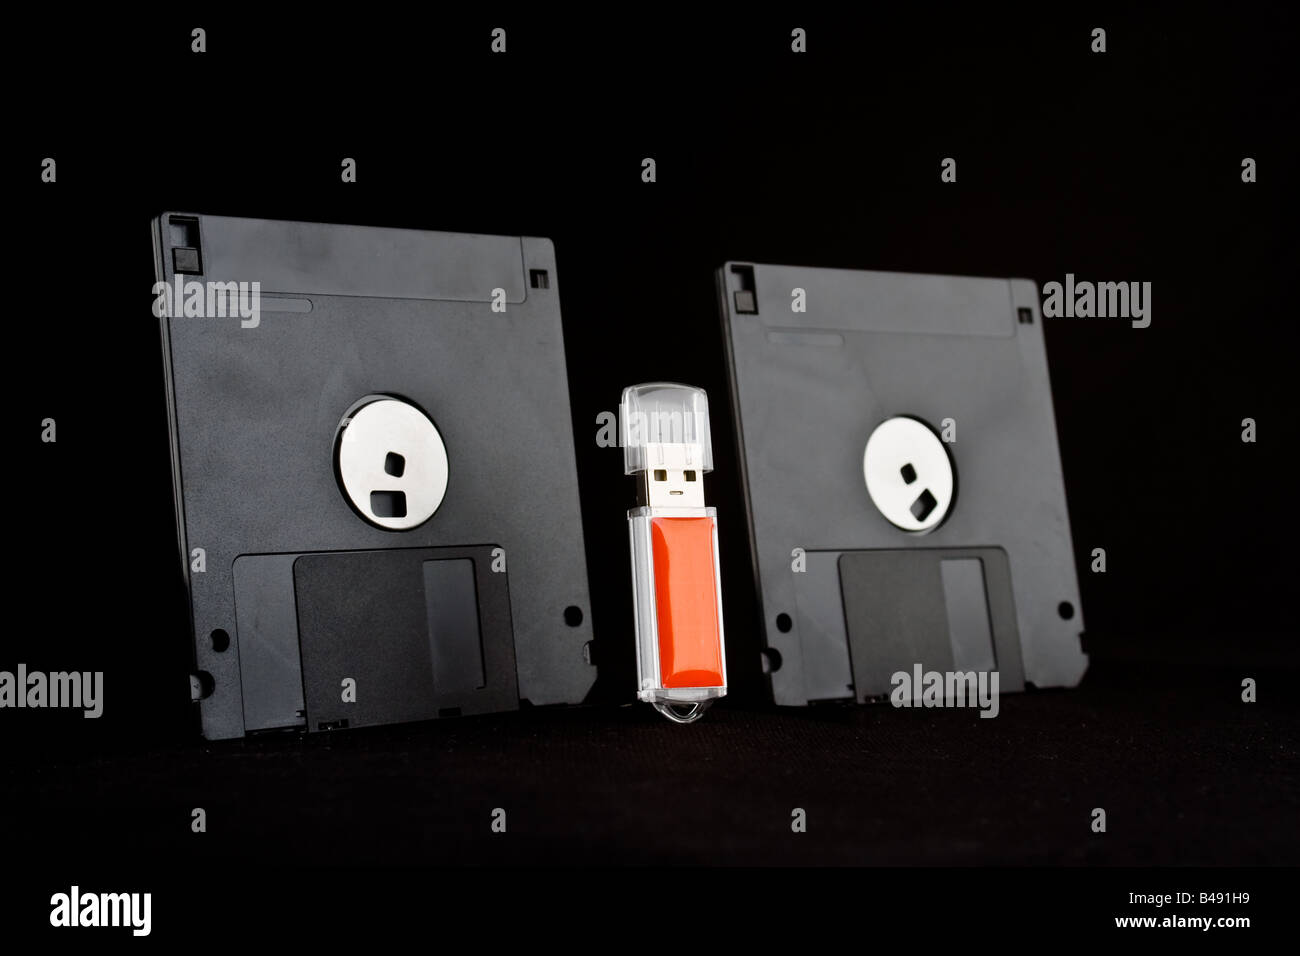 Due dischetti floppy su entrambi i lati di un rosso chiave di memoria usb, dando l'aspetto di vecchia tecnologia minacciando la nuova tecnologia. Foto Stock